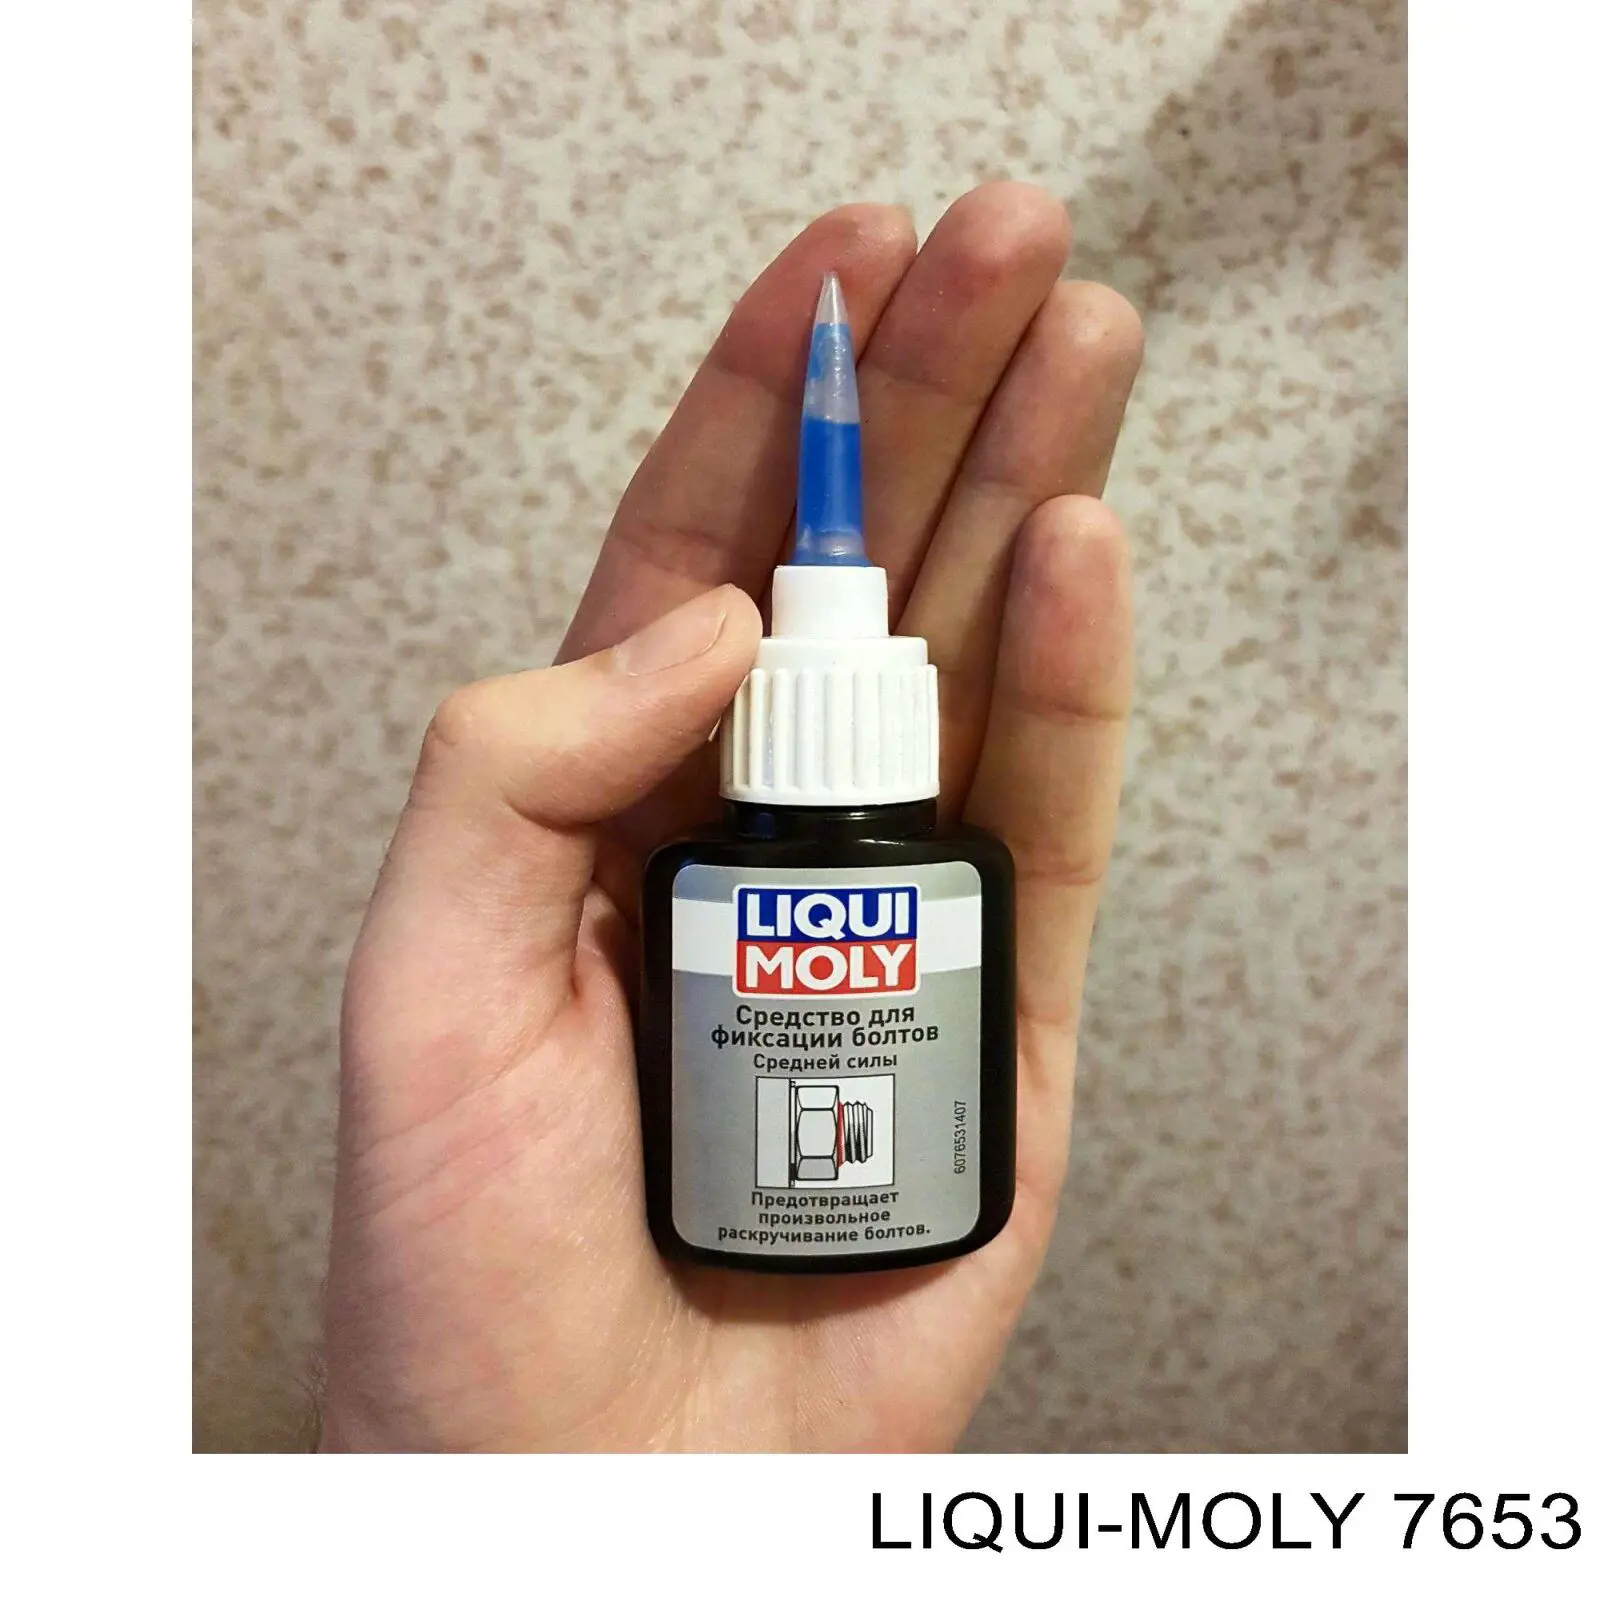 7653 Liqui Moly средство для фиксации винтов Анаэробный фиксатор, 0.01л